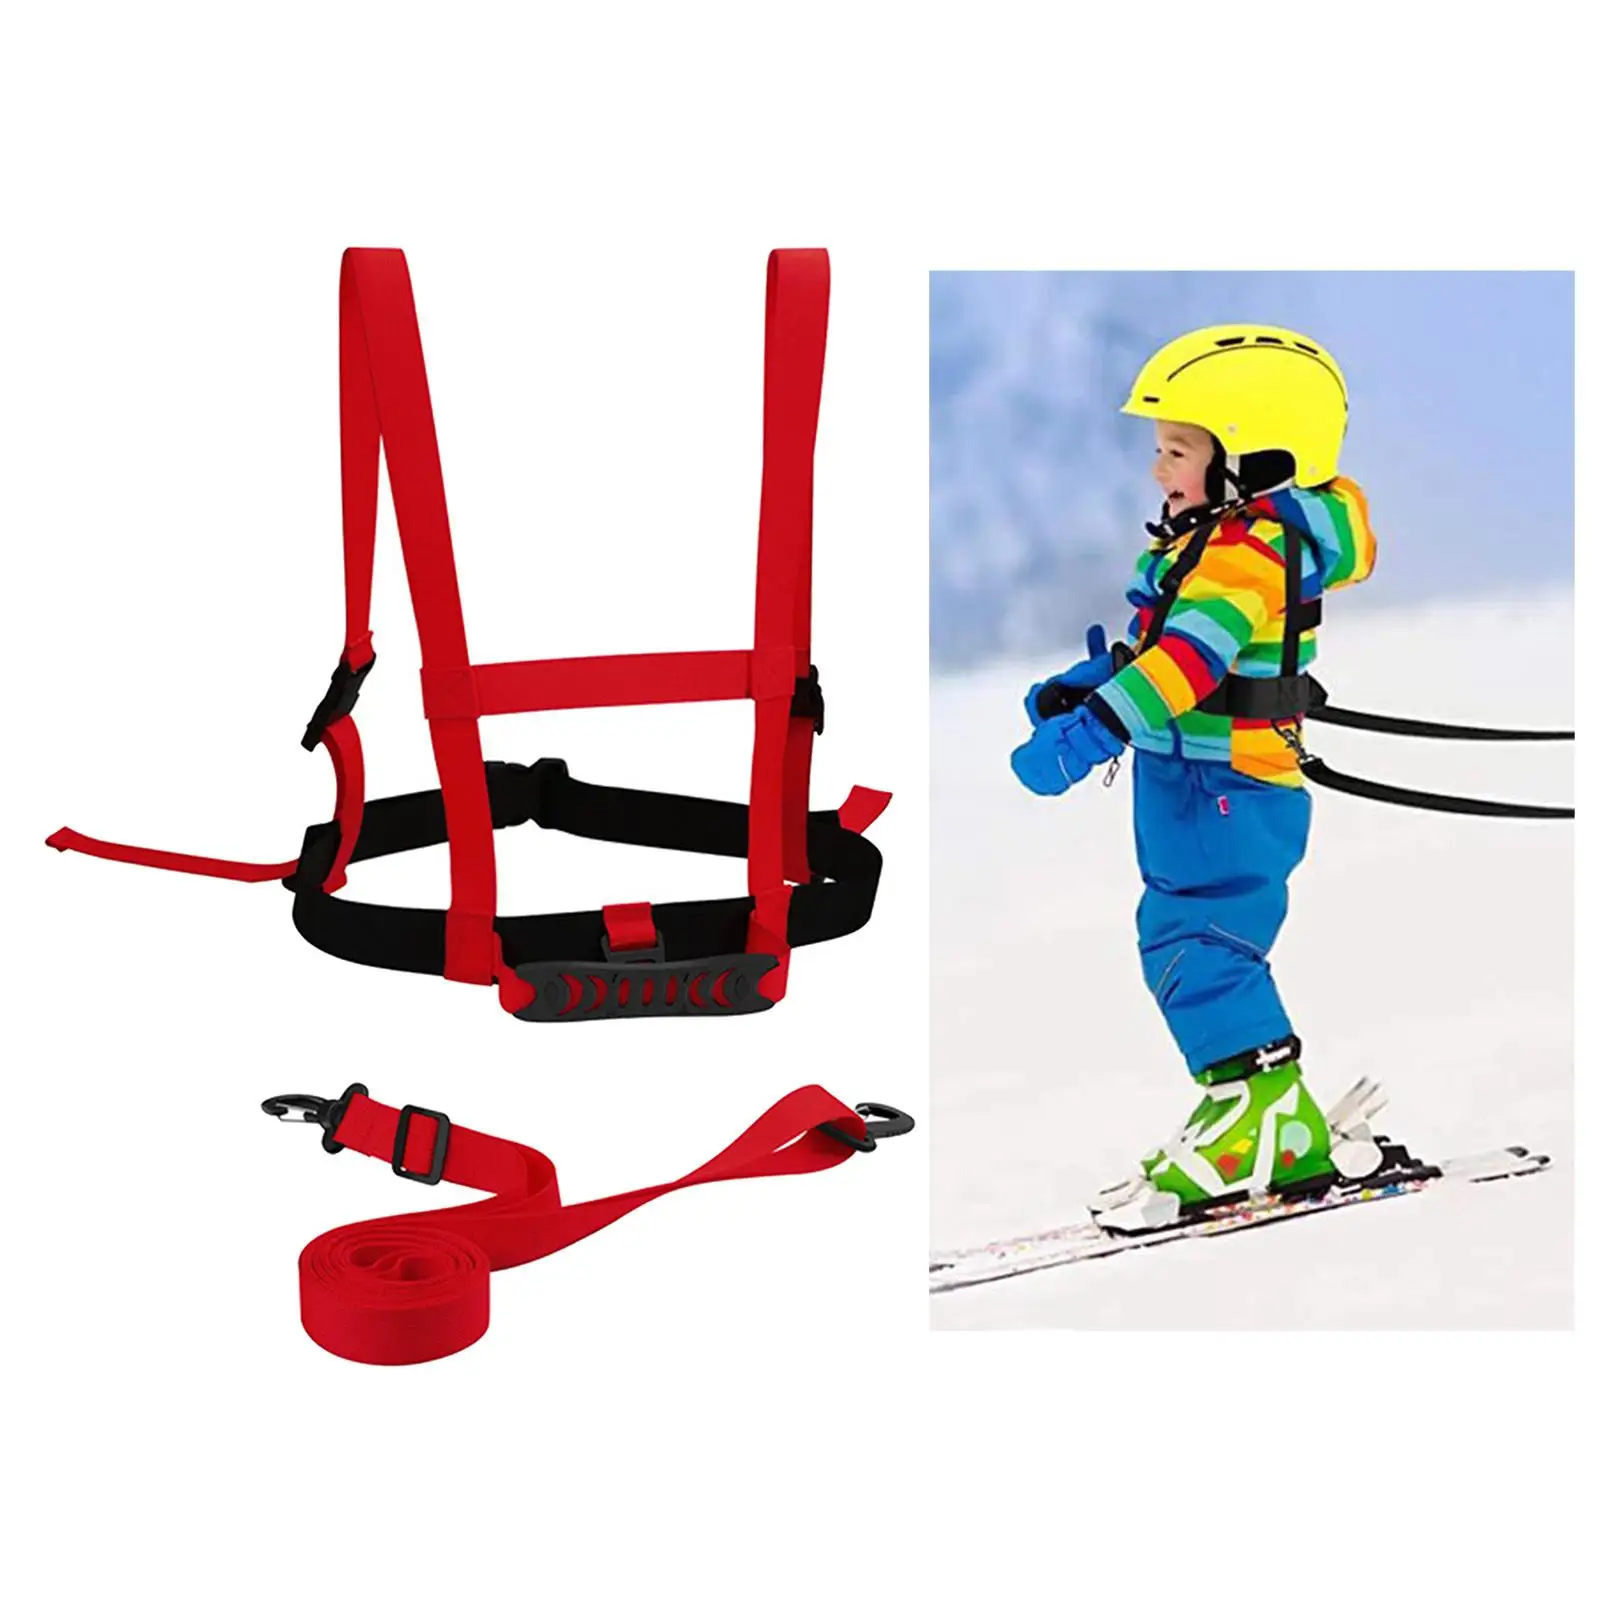 Kids Ski Harness Safety Shoulder Strap for Snowboard Training